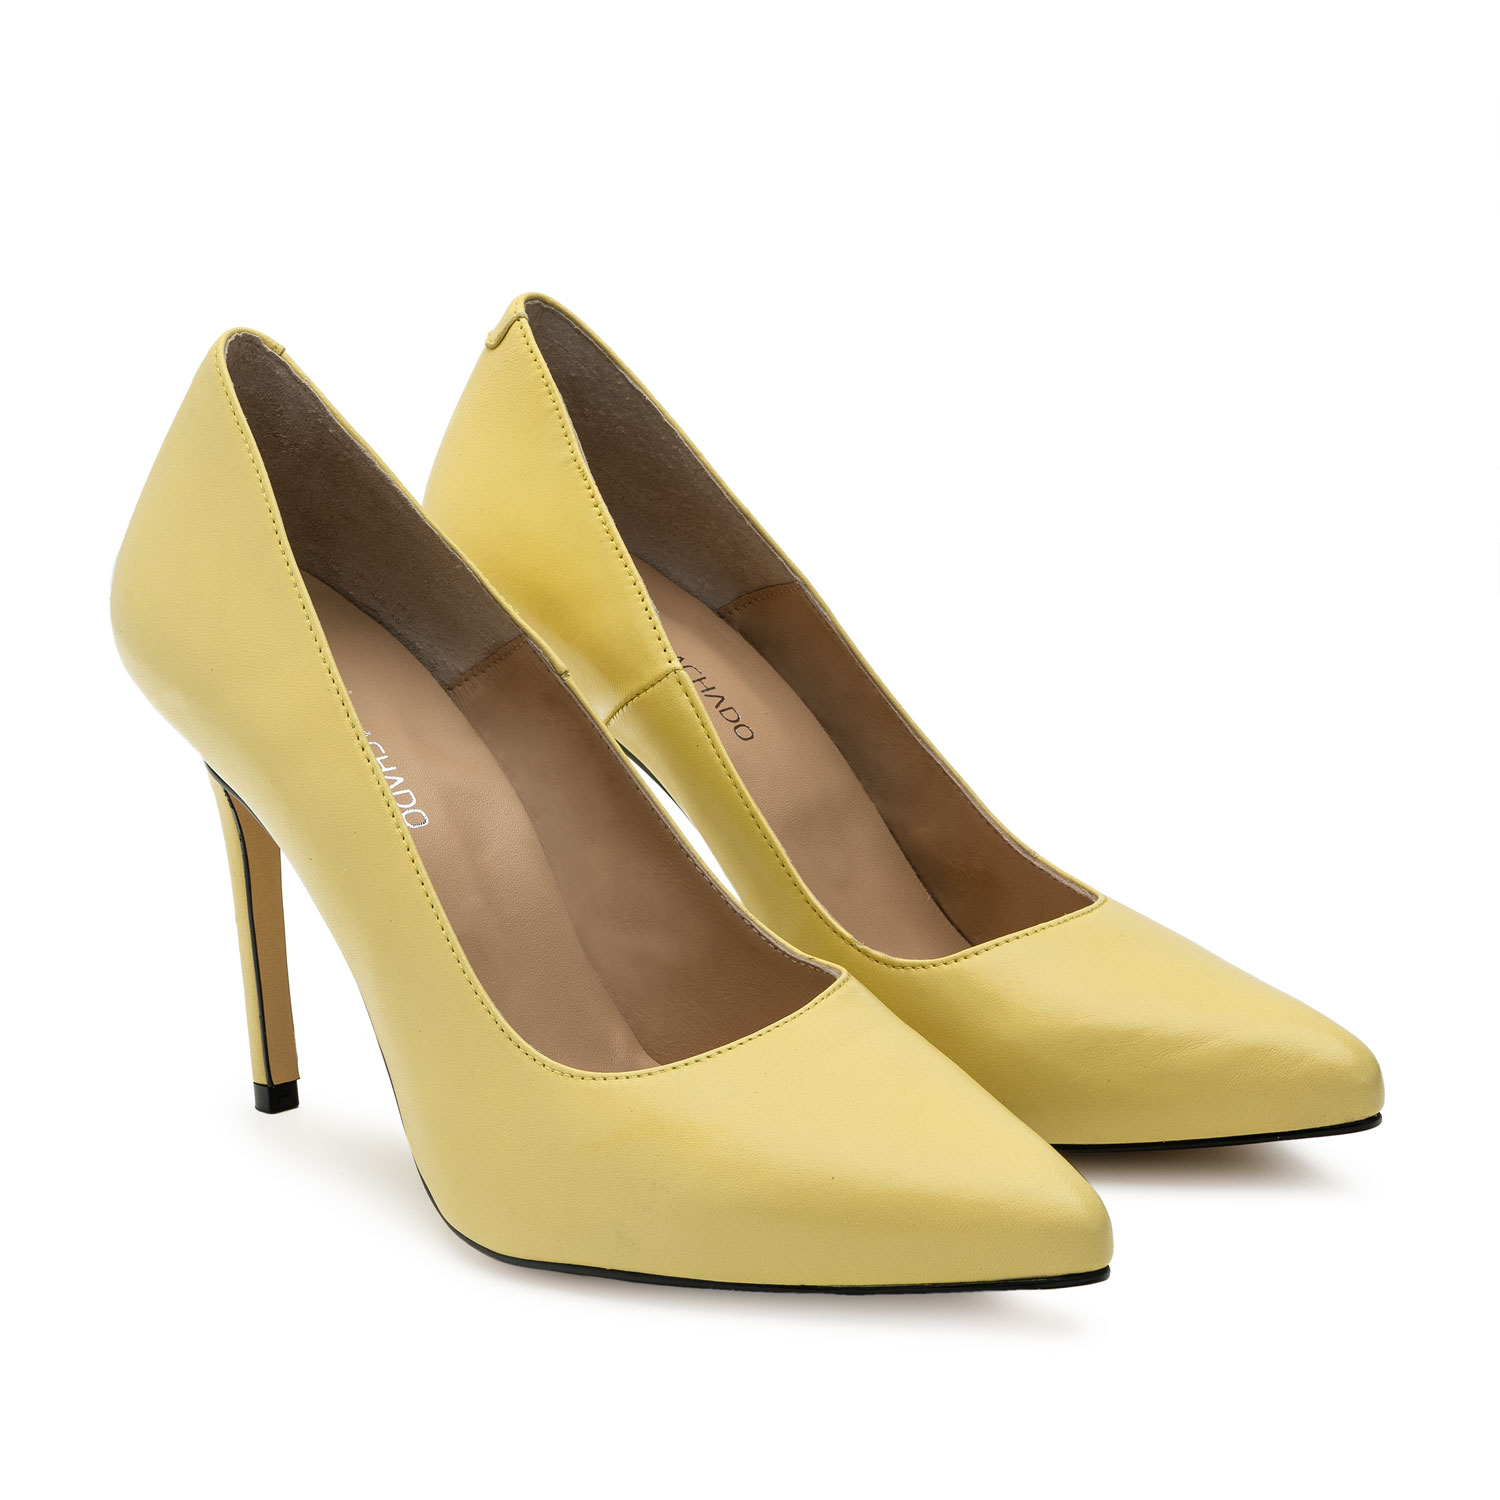 Buy > yellow heel shoes > in stock